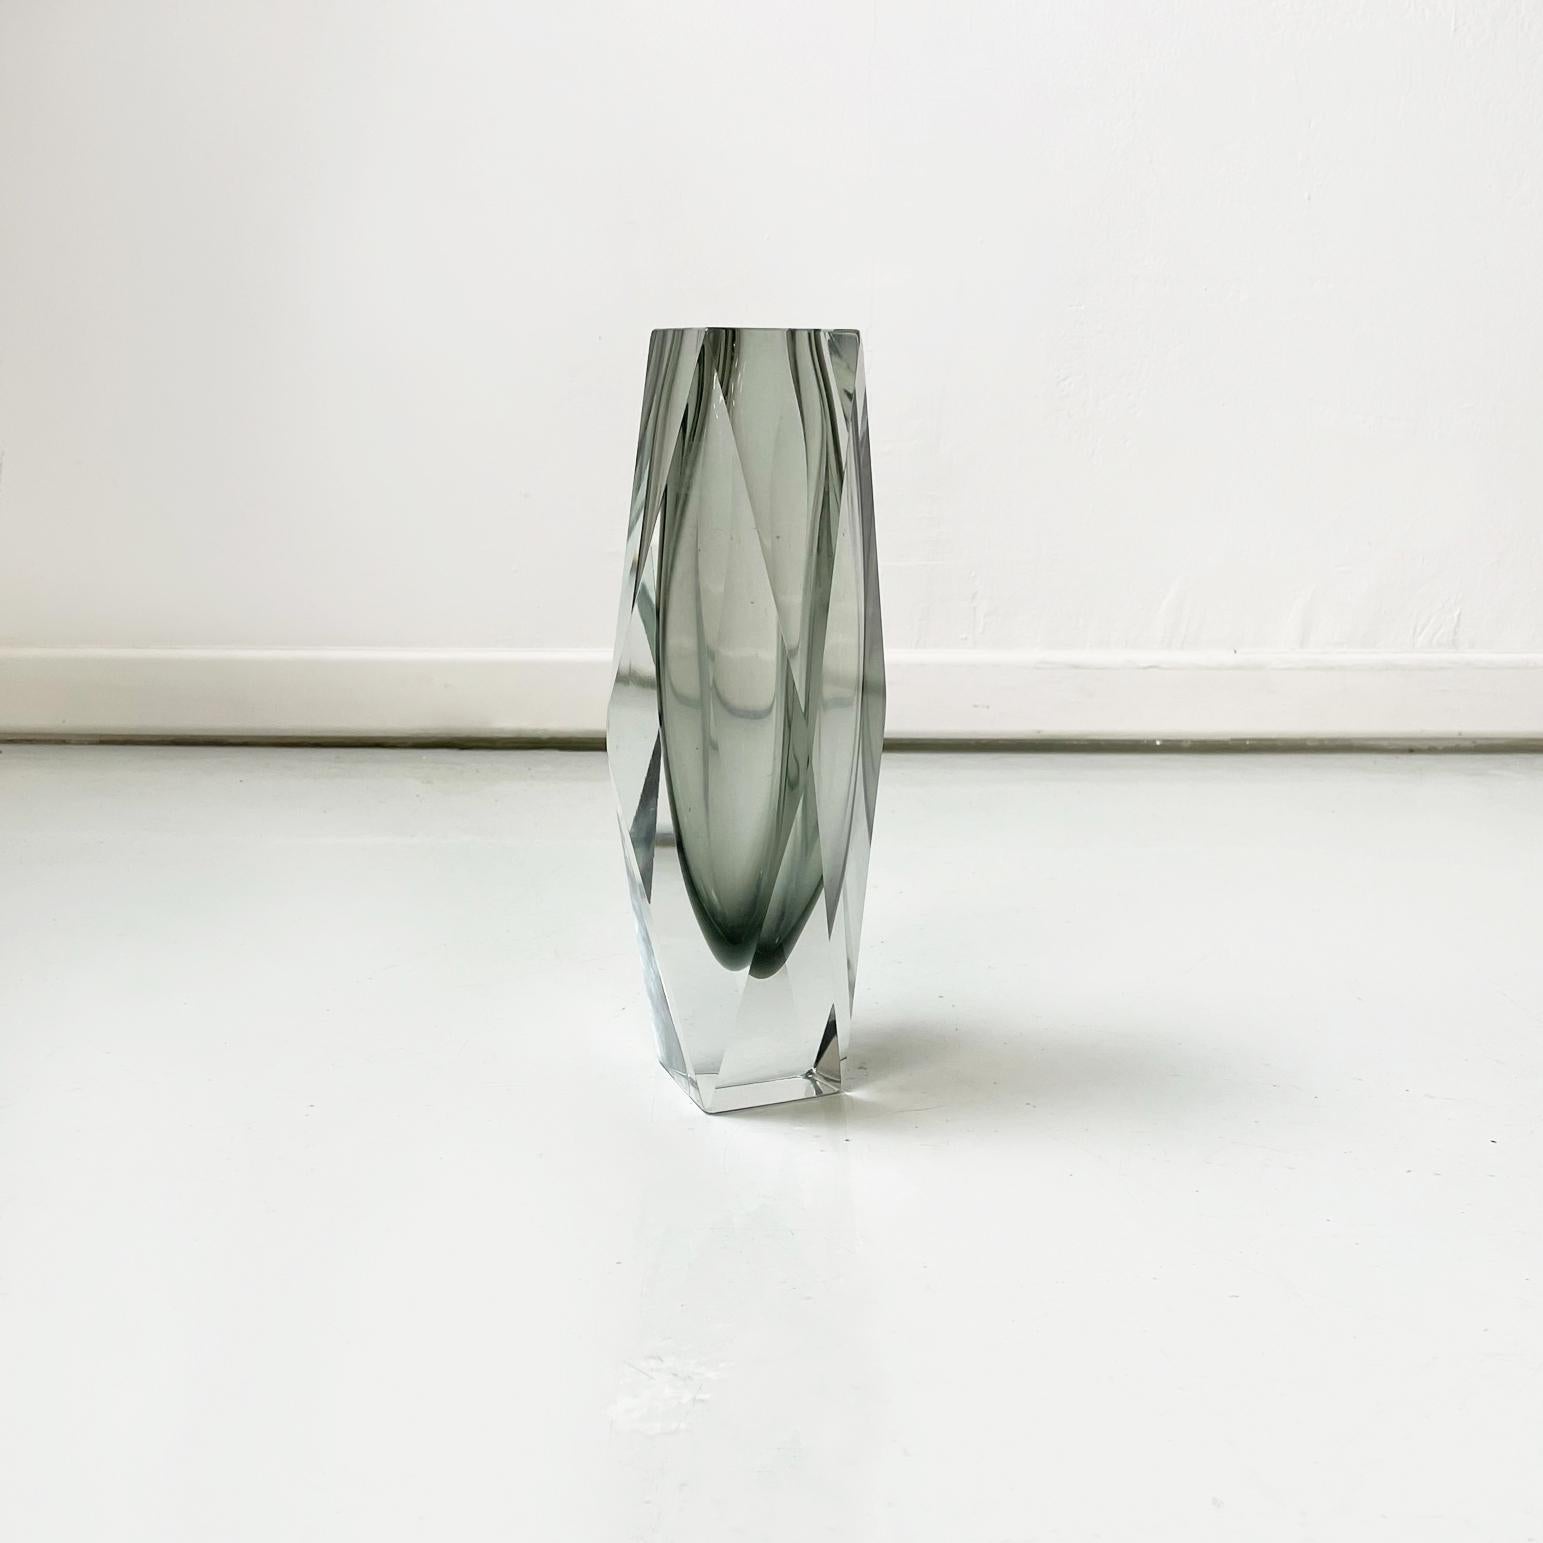 Vase moderne italien en verre Murano gris de la série I Sommersi, 1970
Vase de forme irrégulière en verre Murano gris.
1970s. De la série I Sommersi.
Très bonnes conditions. Petit éclat à la base.
Mesures en cm 14x14x30h
Ce fantastique vase des